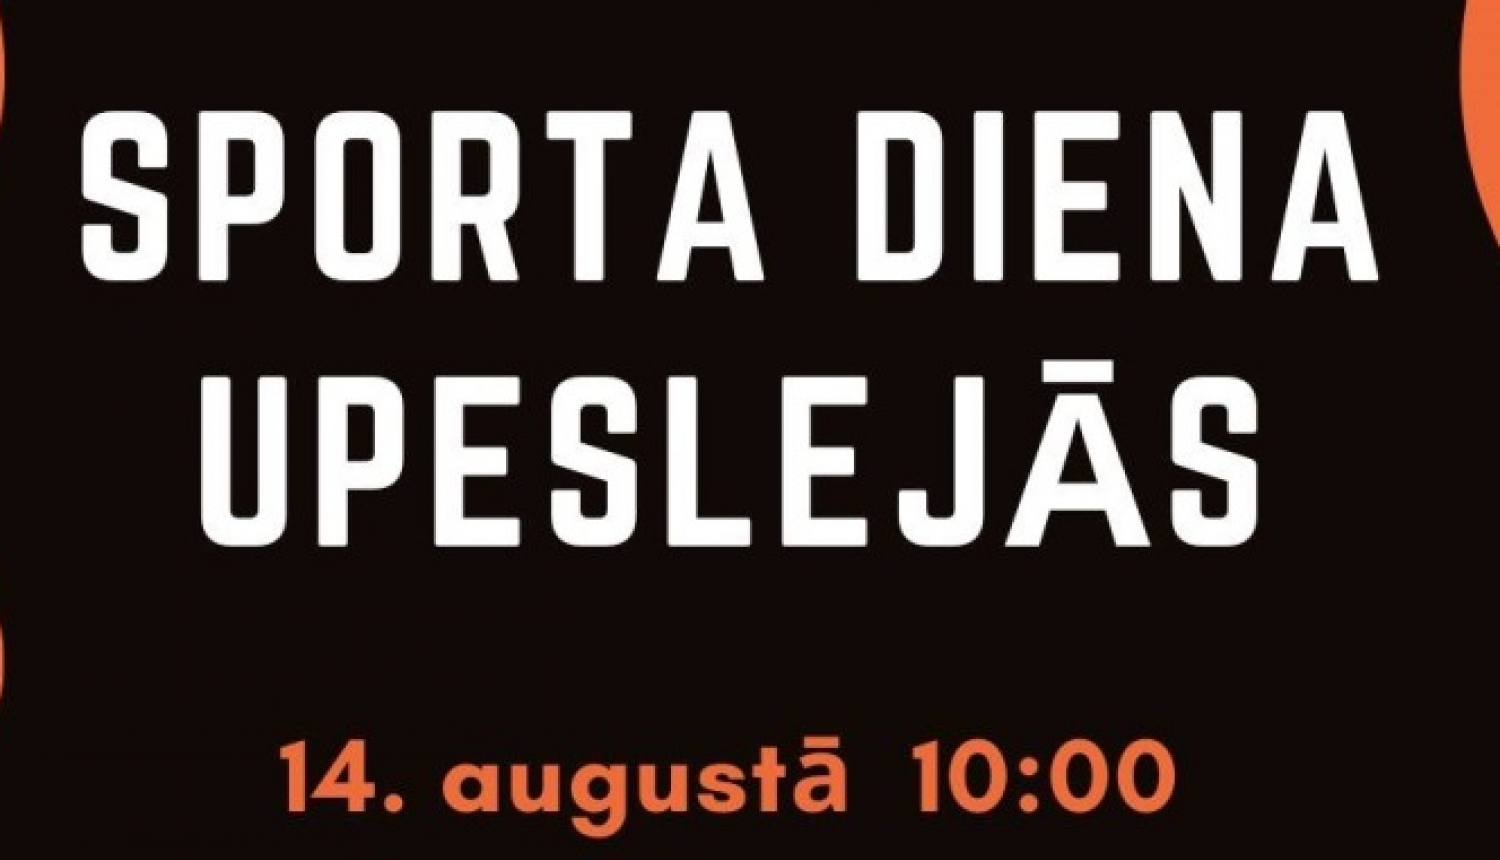 14. augustā 10:00 Sporta diena Upeslejās, Stopiņu pagastā, iepriekšējā pieteikšanās līdz 12. augustam